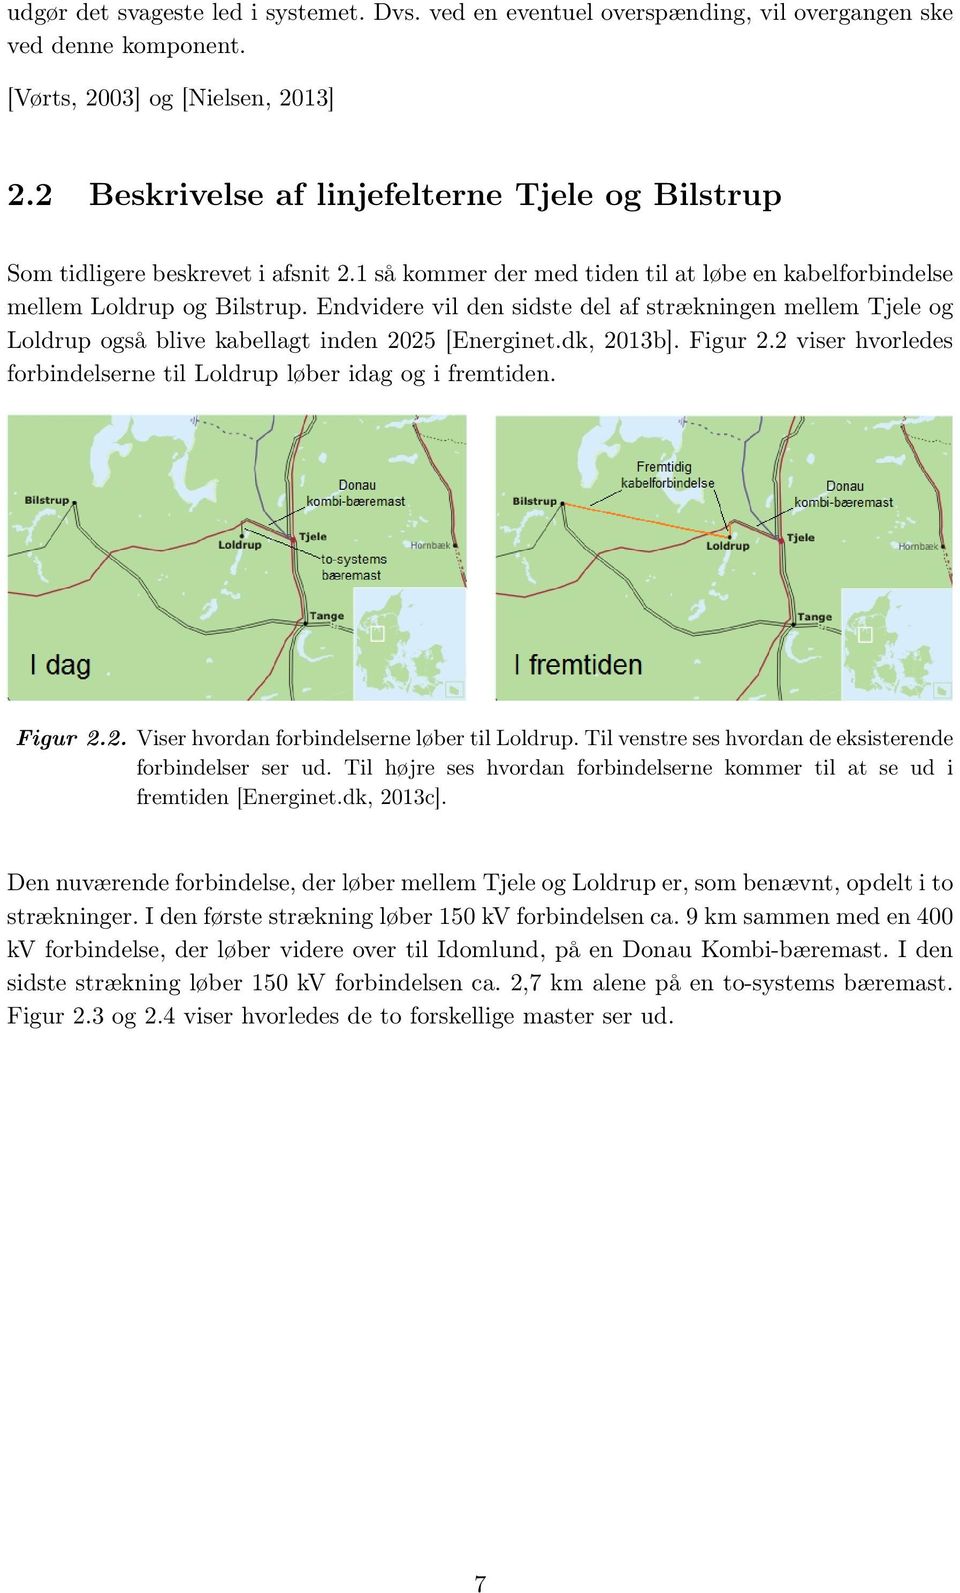 Endvidere vil den sidste del af strækningen mellem Tjele og Loldrup også blive kabellagt inden 2025 [Energinet.dk, 2013b]. Figur 2.